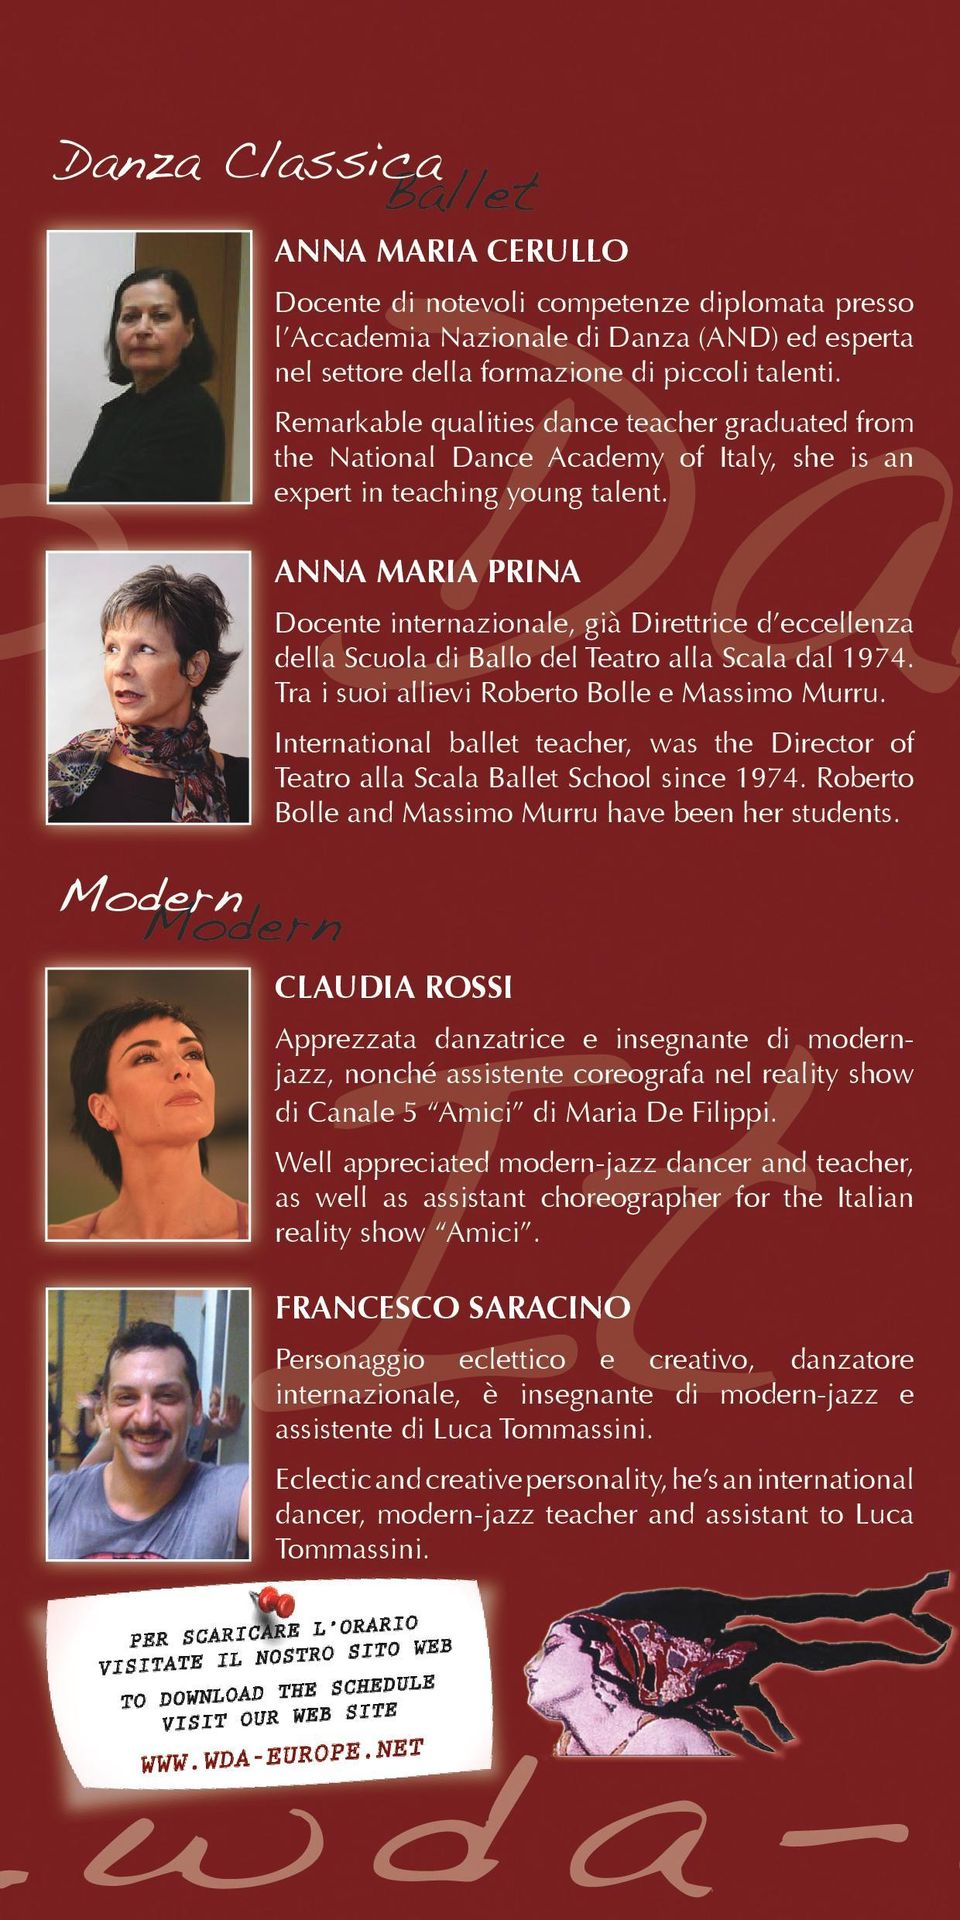 ANNA MARIA PRINA Docente internazionale, già Direttrice d eccellenza della Scuola di Ballo del Teatro alla Scala dal 1974. Tra i suoi allievi Roberto Bolle e Massimo Murru.